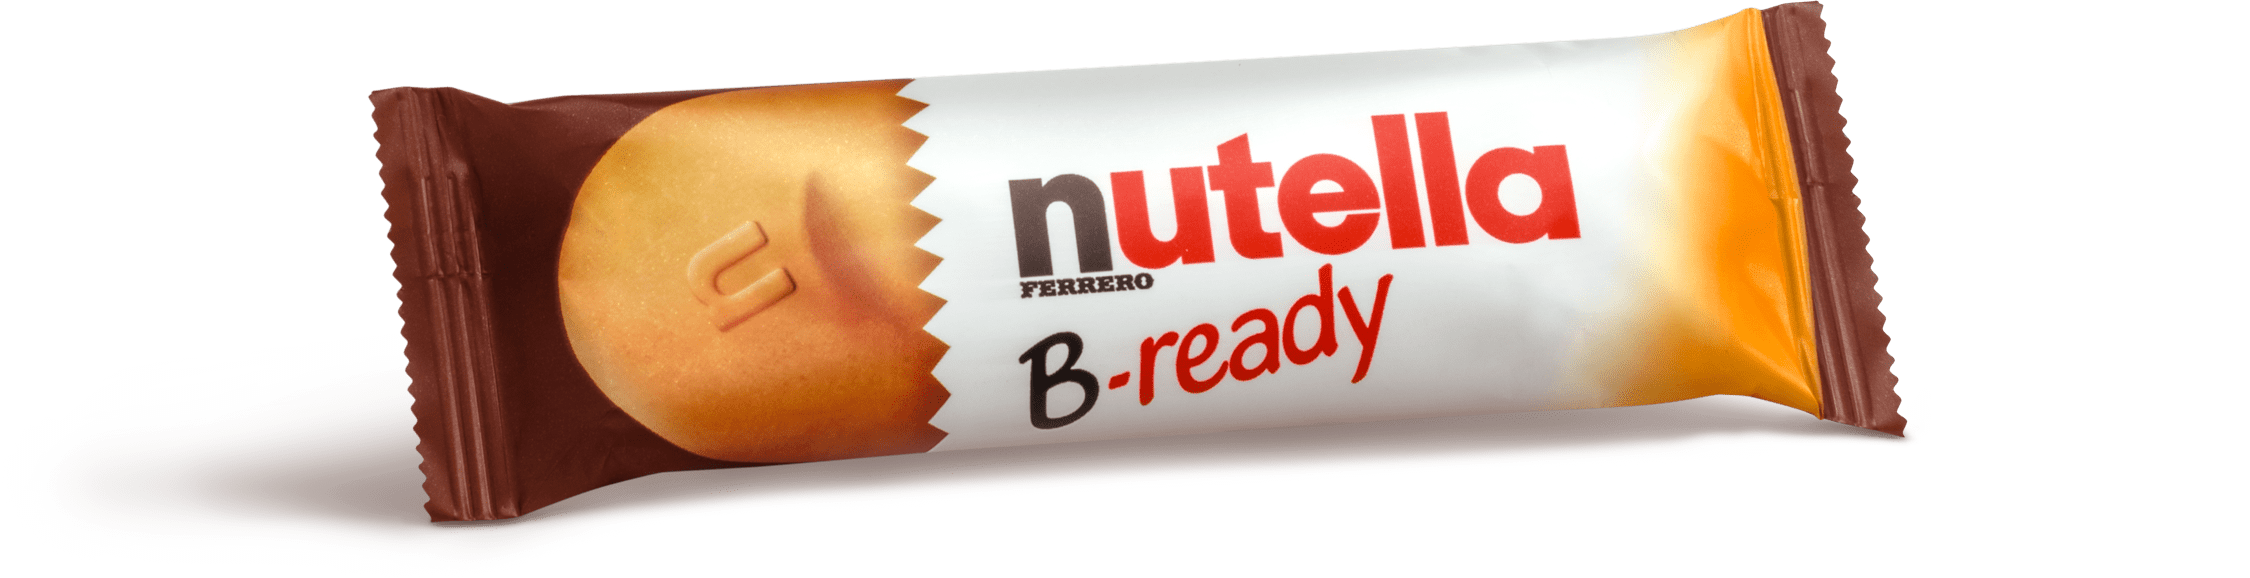 nutella-b-ready